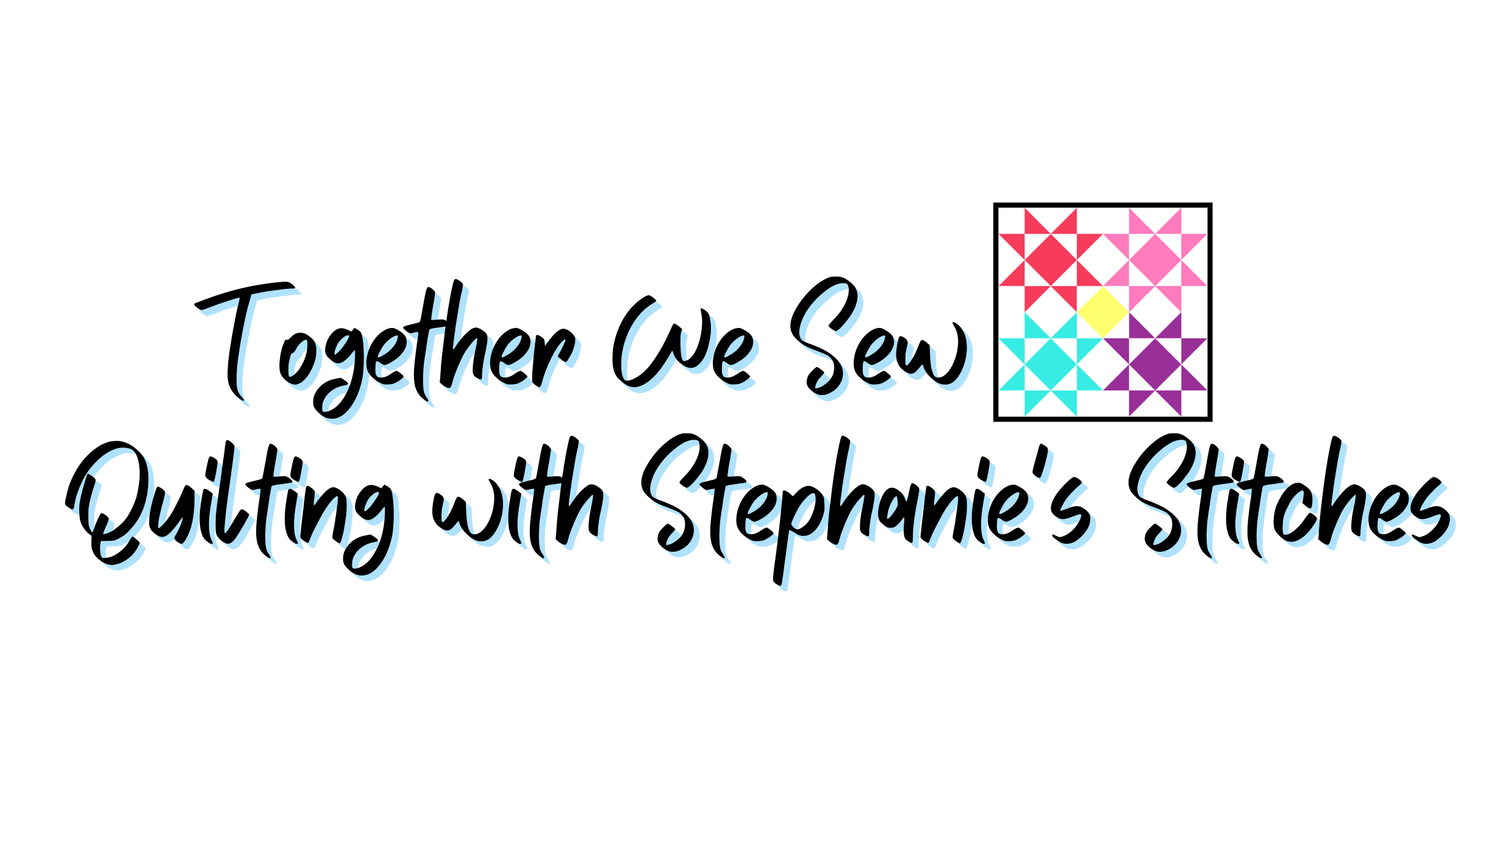 Stephanie's Stitches